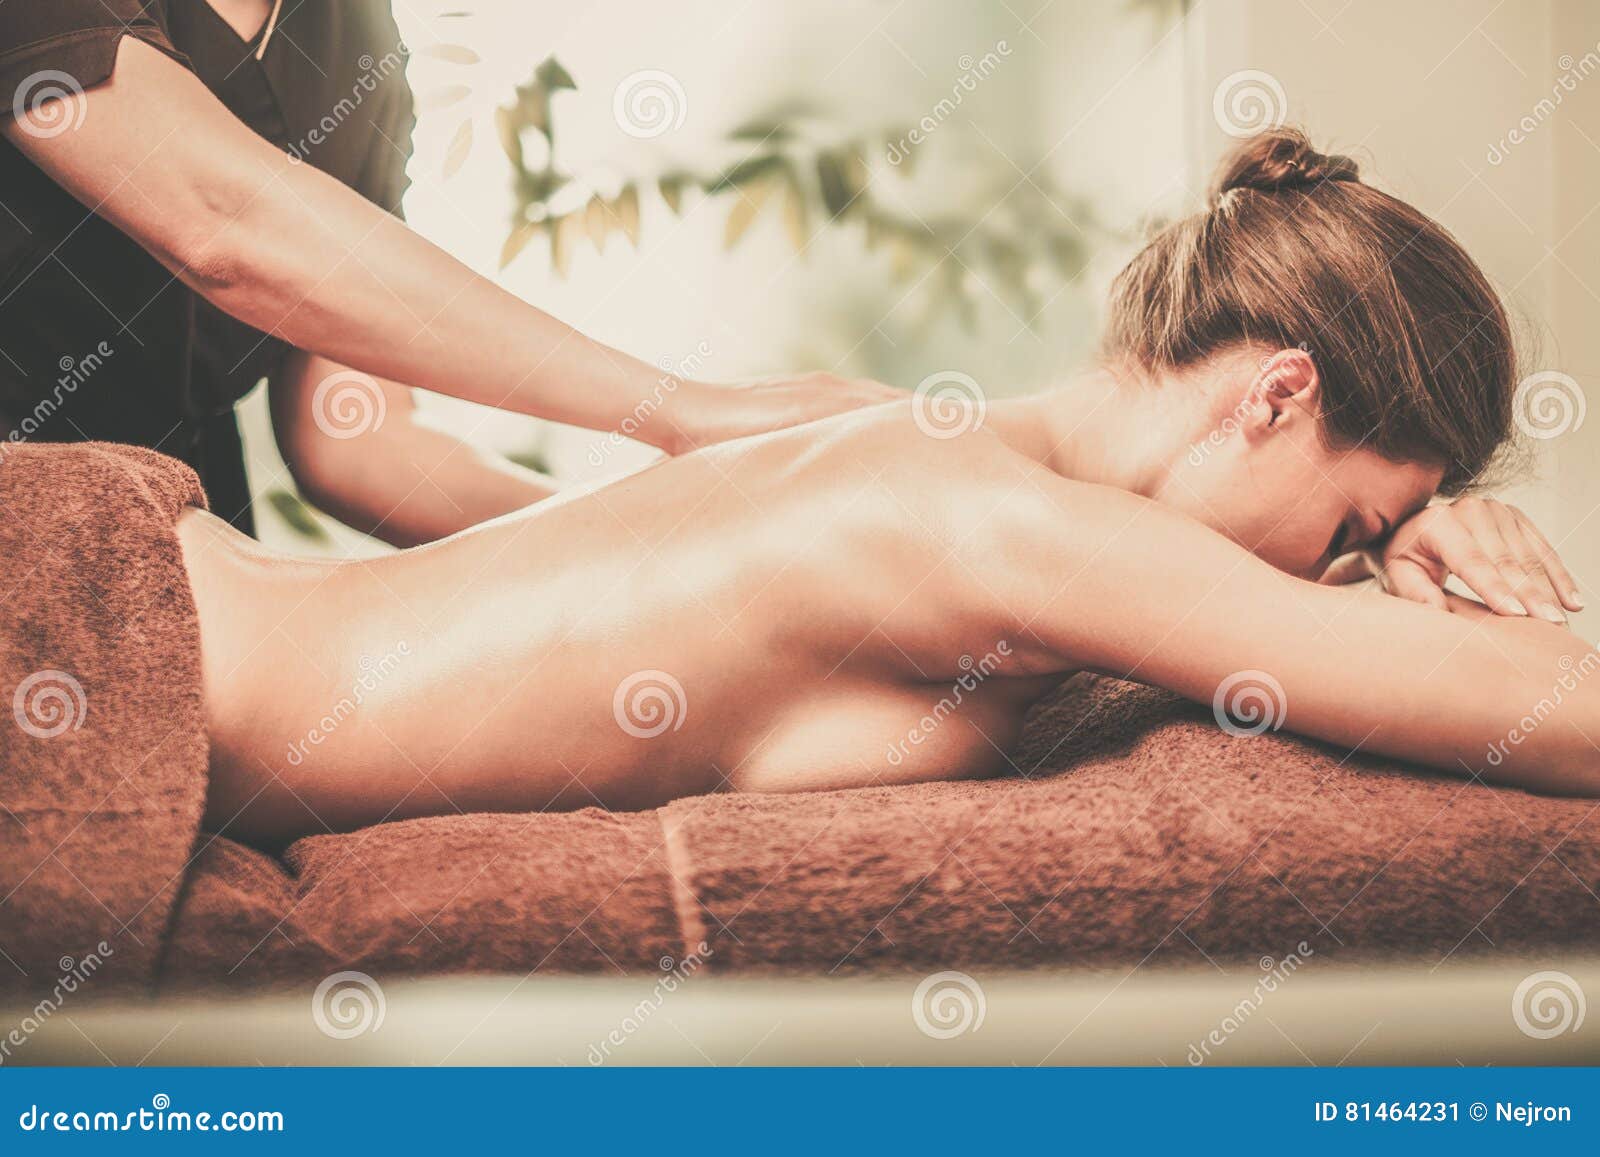 Страстная брюнетка наслаждается сексом после массажа